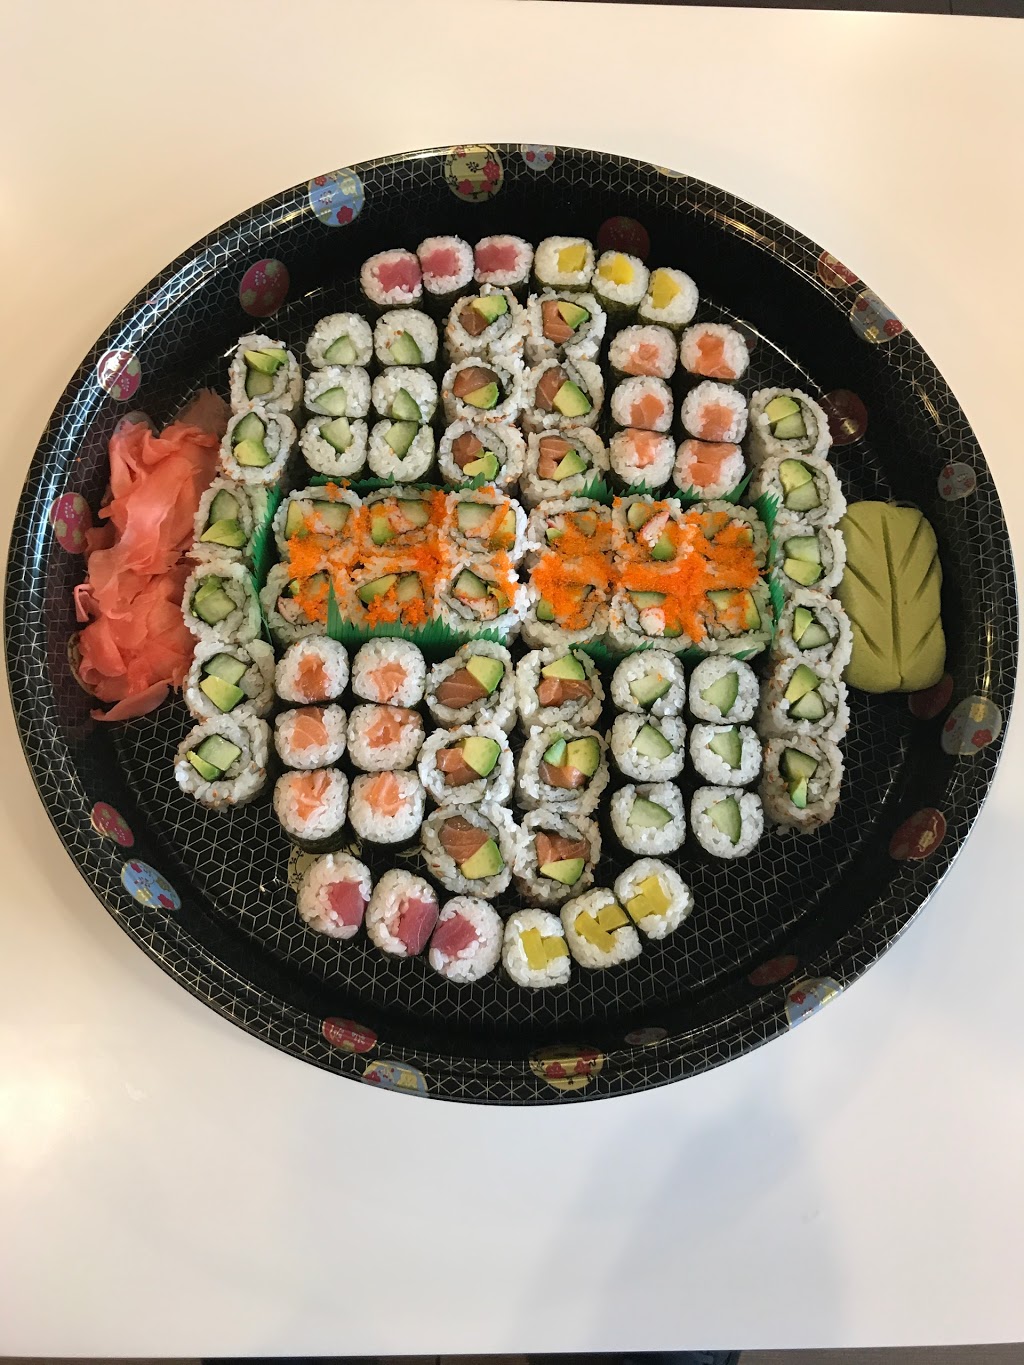 Sushi Sushi Japanese Restaurant | 9830 Hwy 48, Markham, ON L6E 0H7, Canada | Phone: (905) 209-8288